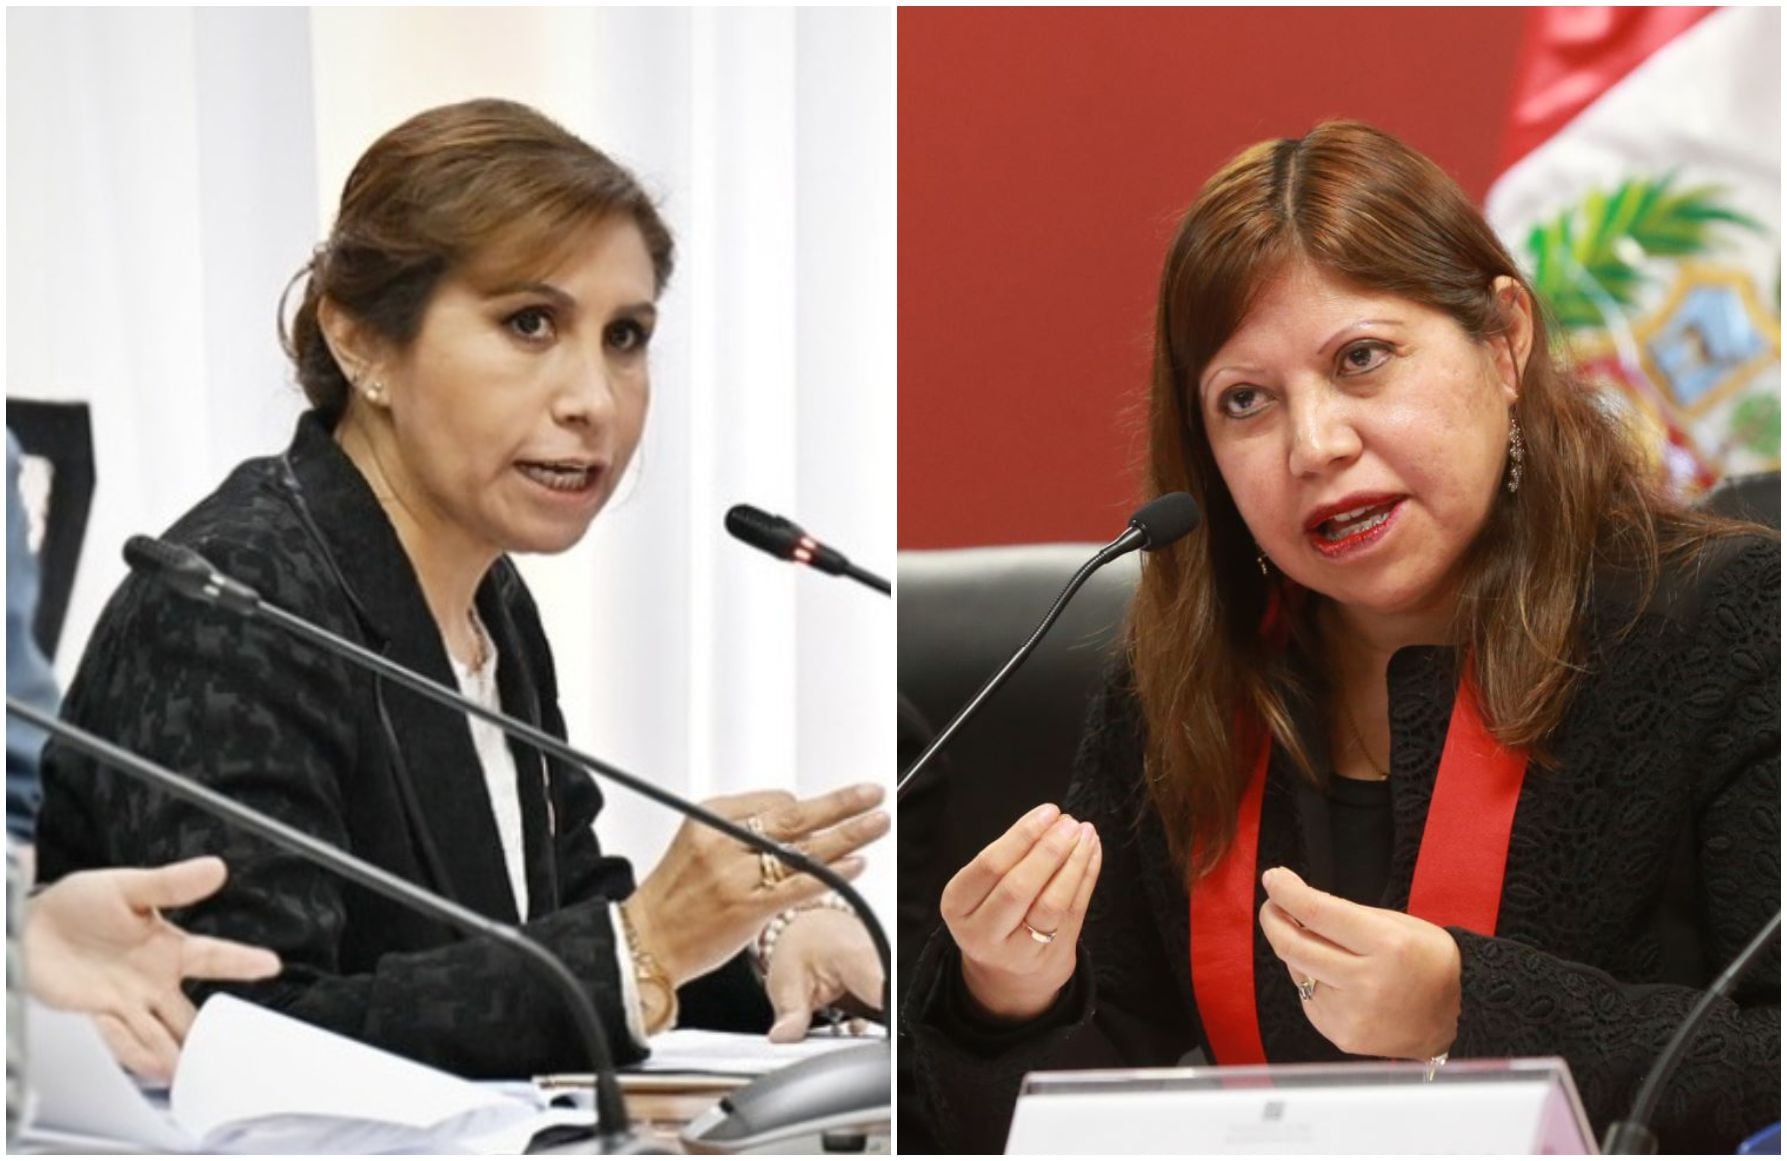 Patricia Benavides y su hermana. La congresista Susel Paredes encabeza un pedido para que Patricia Benavides difunda sus trabajos académicos